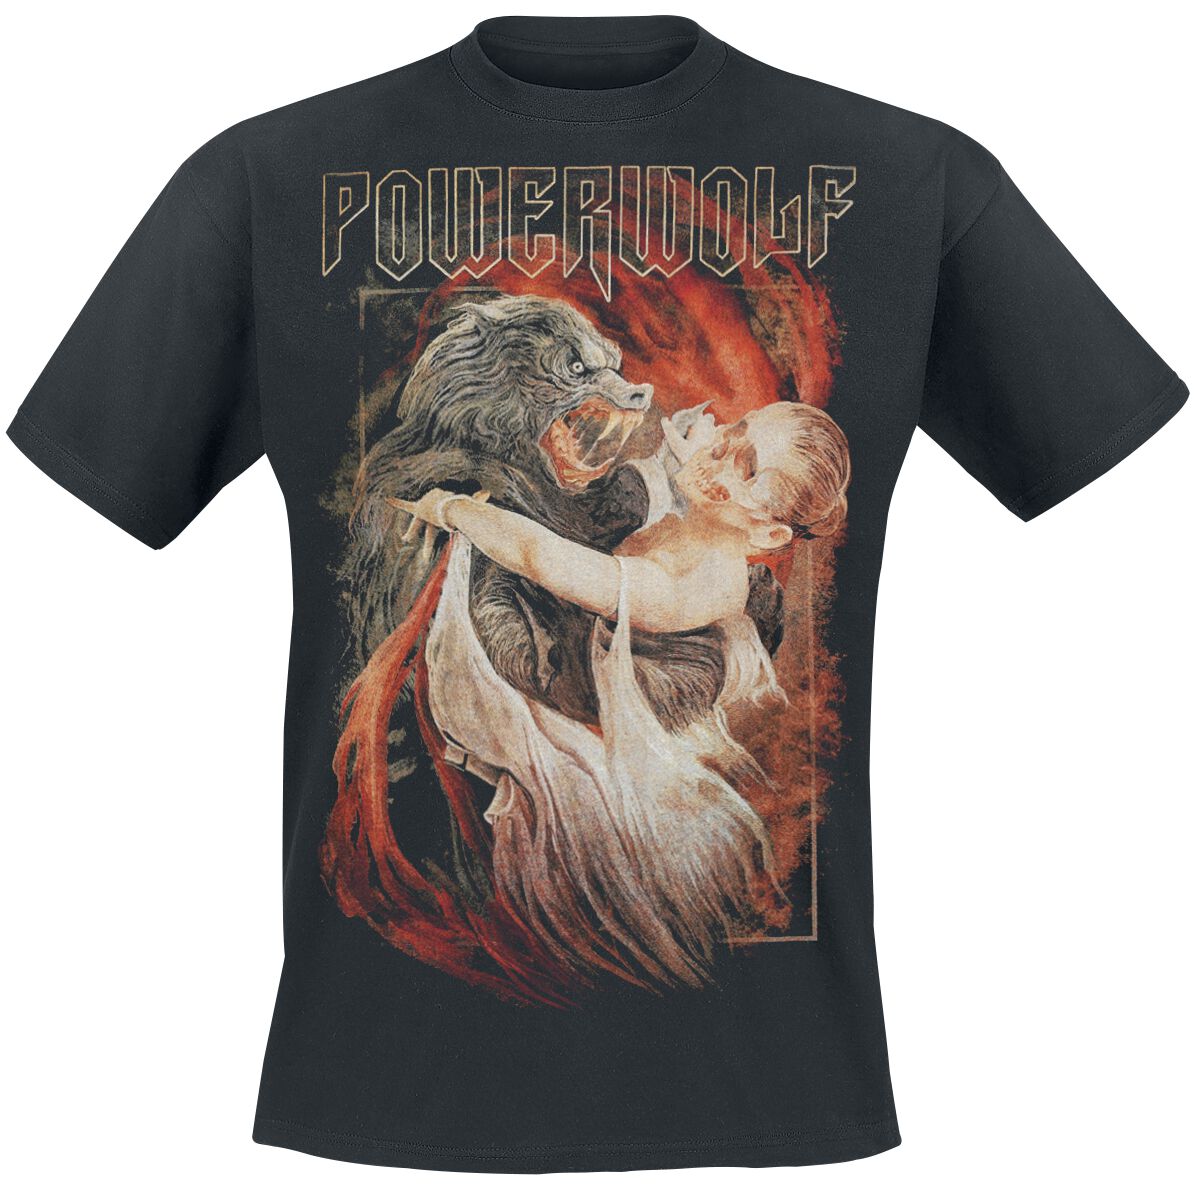 Powerwolf T-Shirt - Dancing With The Dead - S bis 3XL - für Männer - Größe L - schwarz  - Lizenziertes Merchandise!